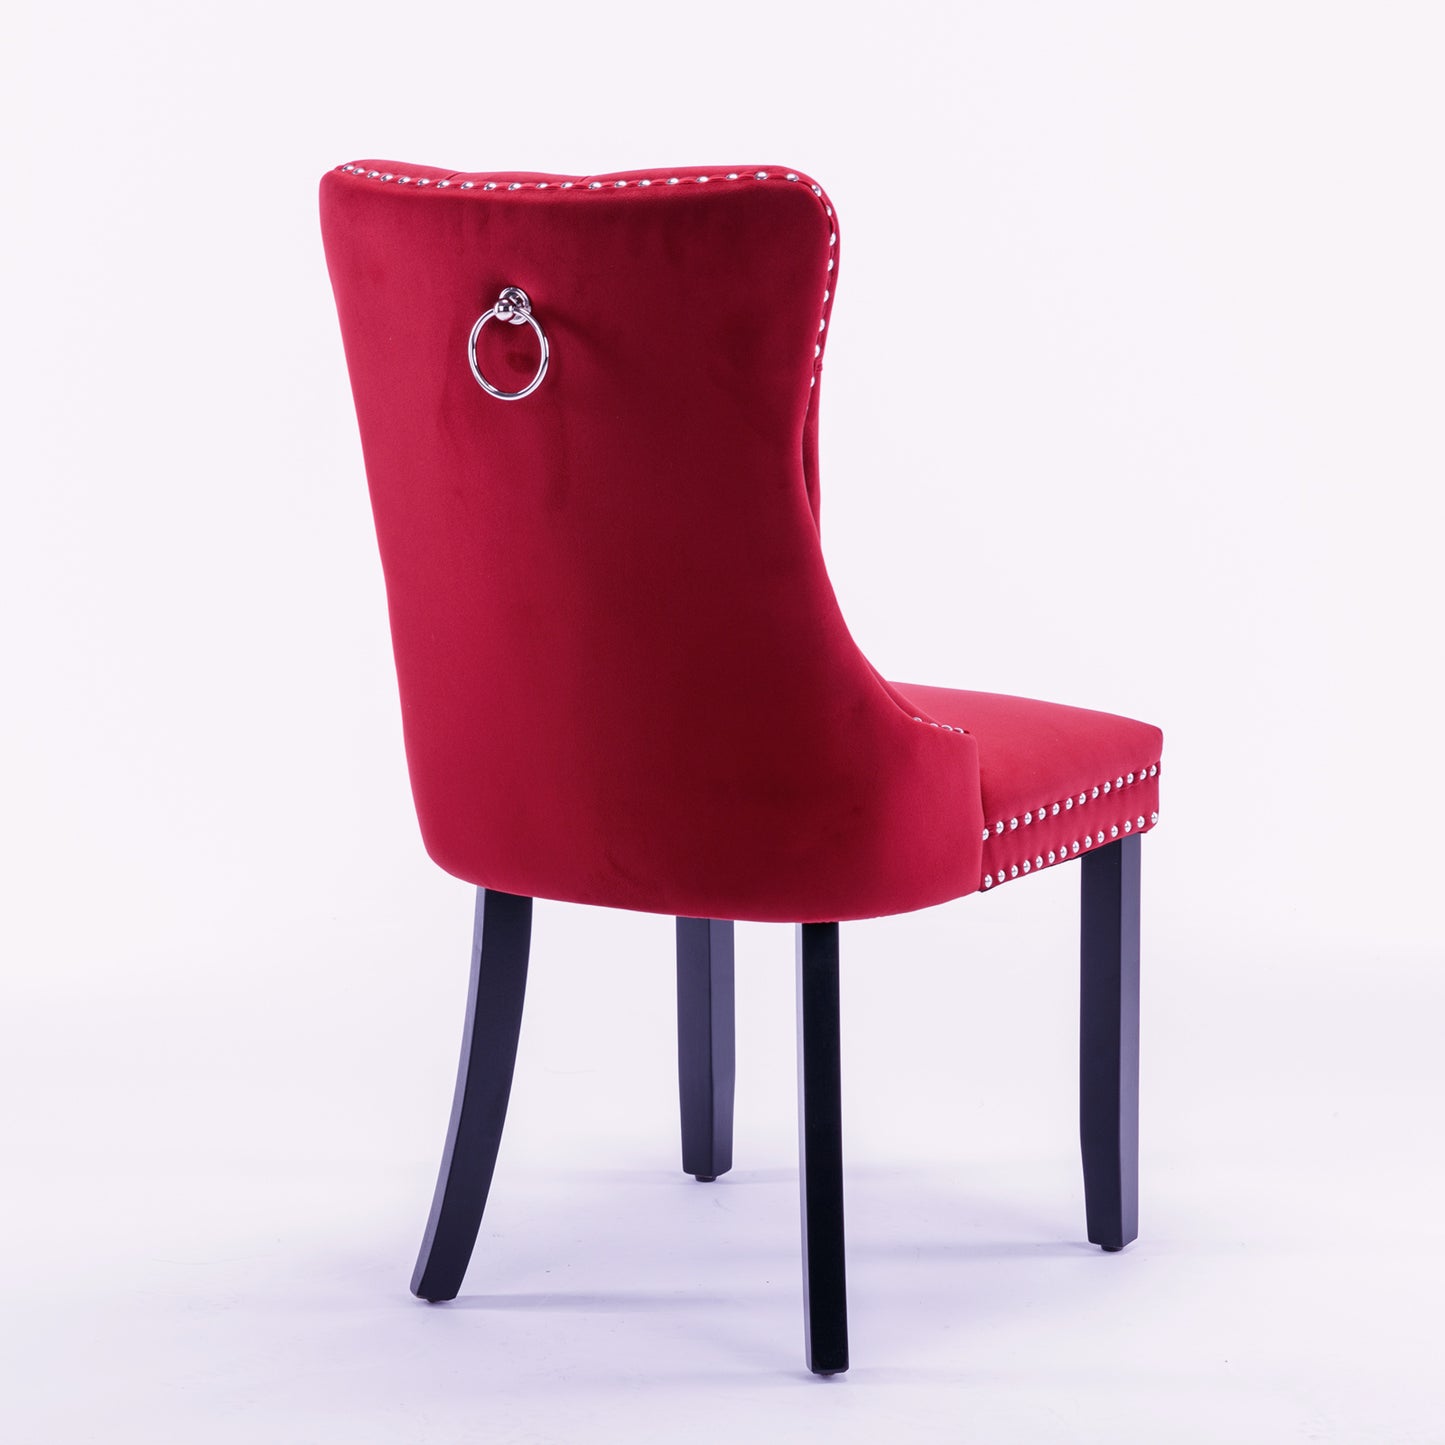 Nikki Tufted Dining Chair with Black Legs in Burgundy Velvet Set of 2